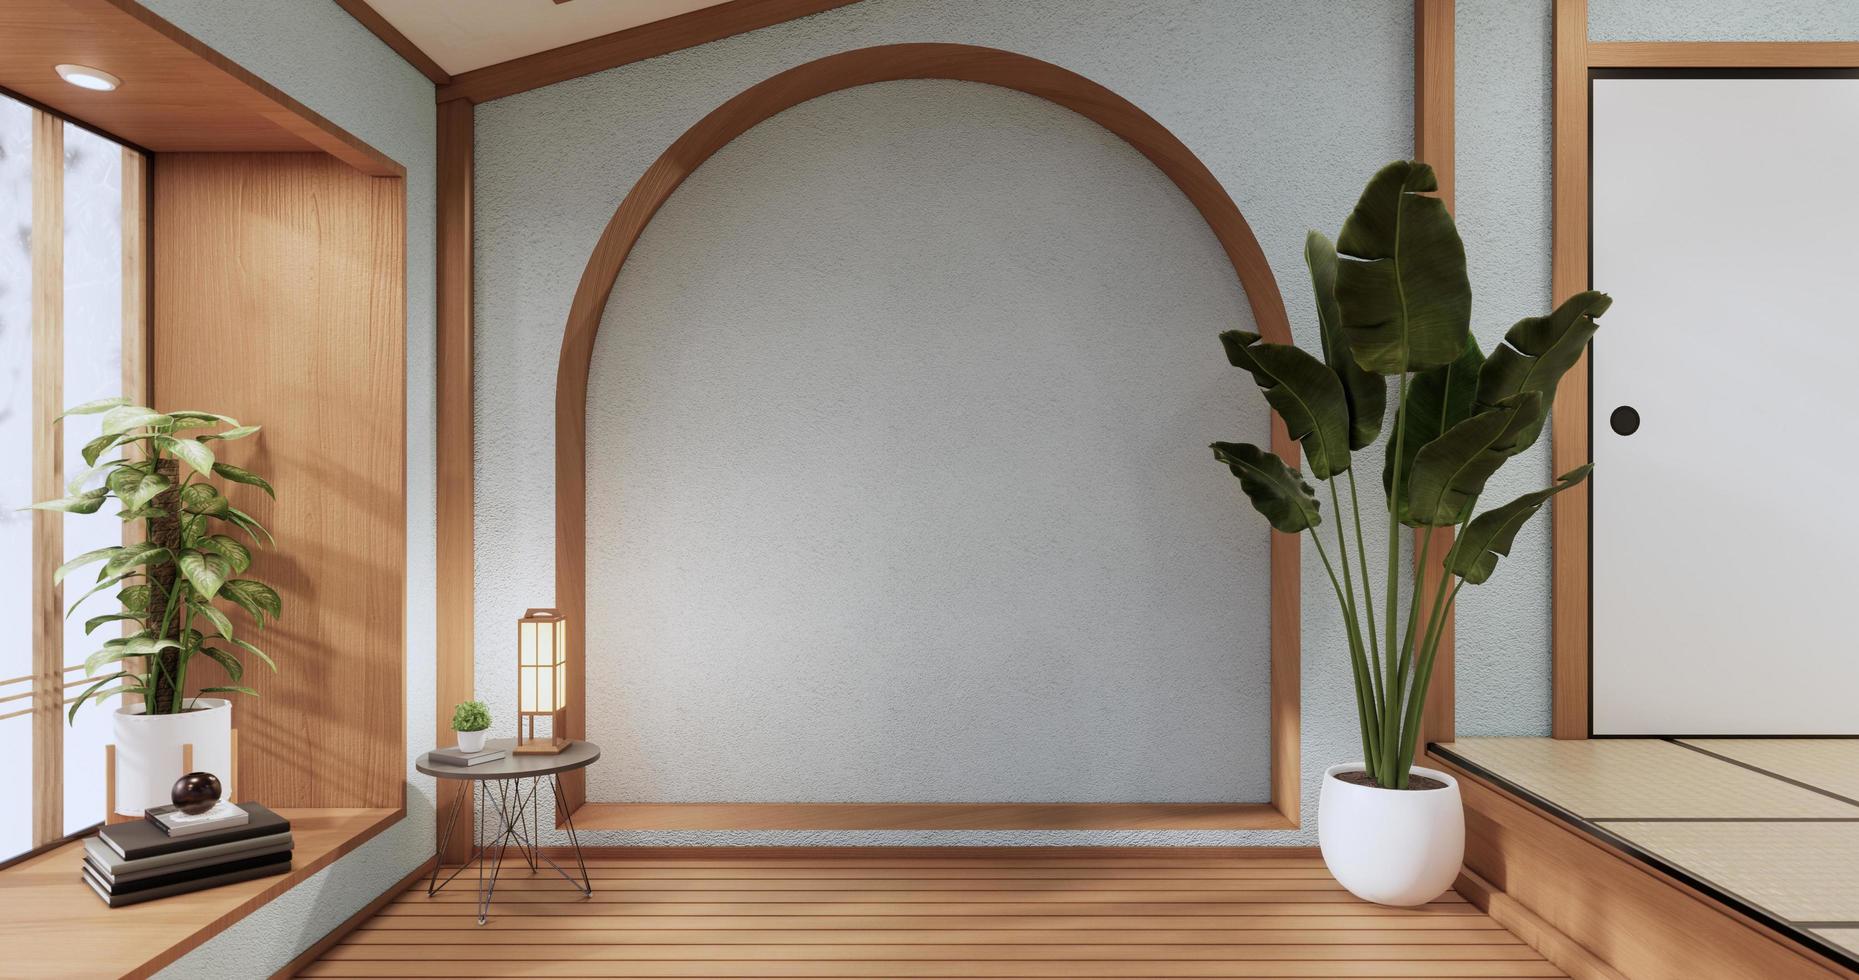 la conception en bois de l'armoire sur l'intérieur de la salle à la menthe style moderne.rendu 3d photo